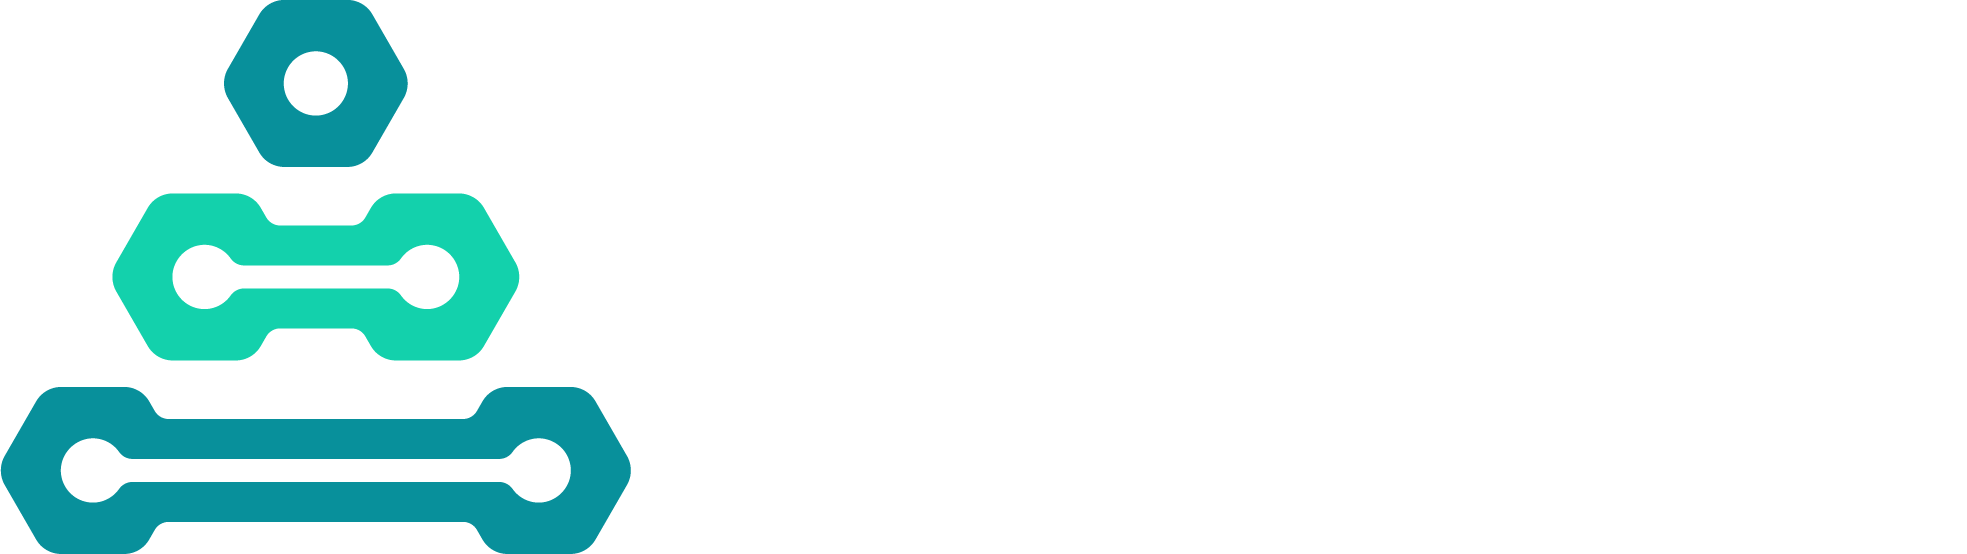 DCARPE Alliance